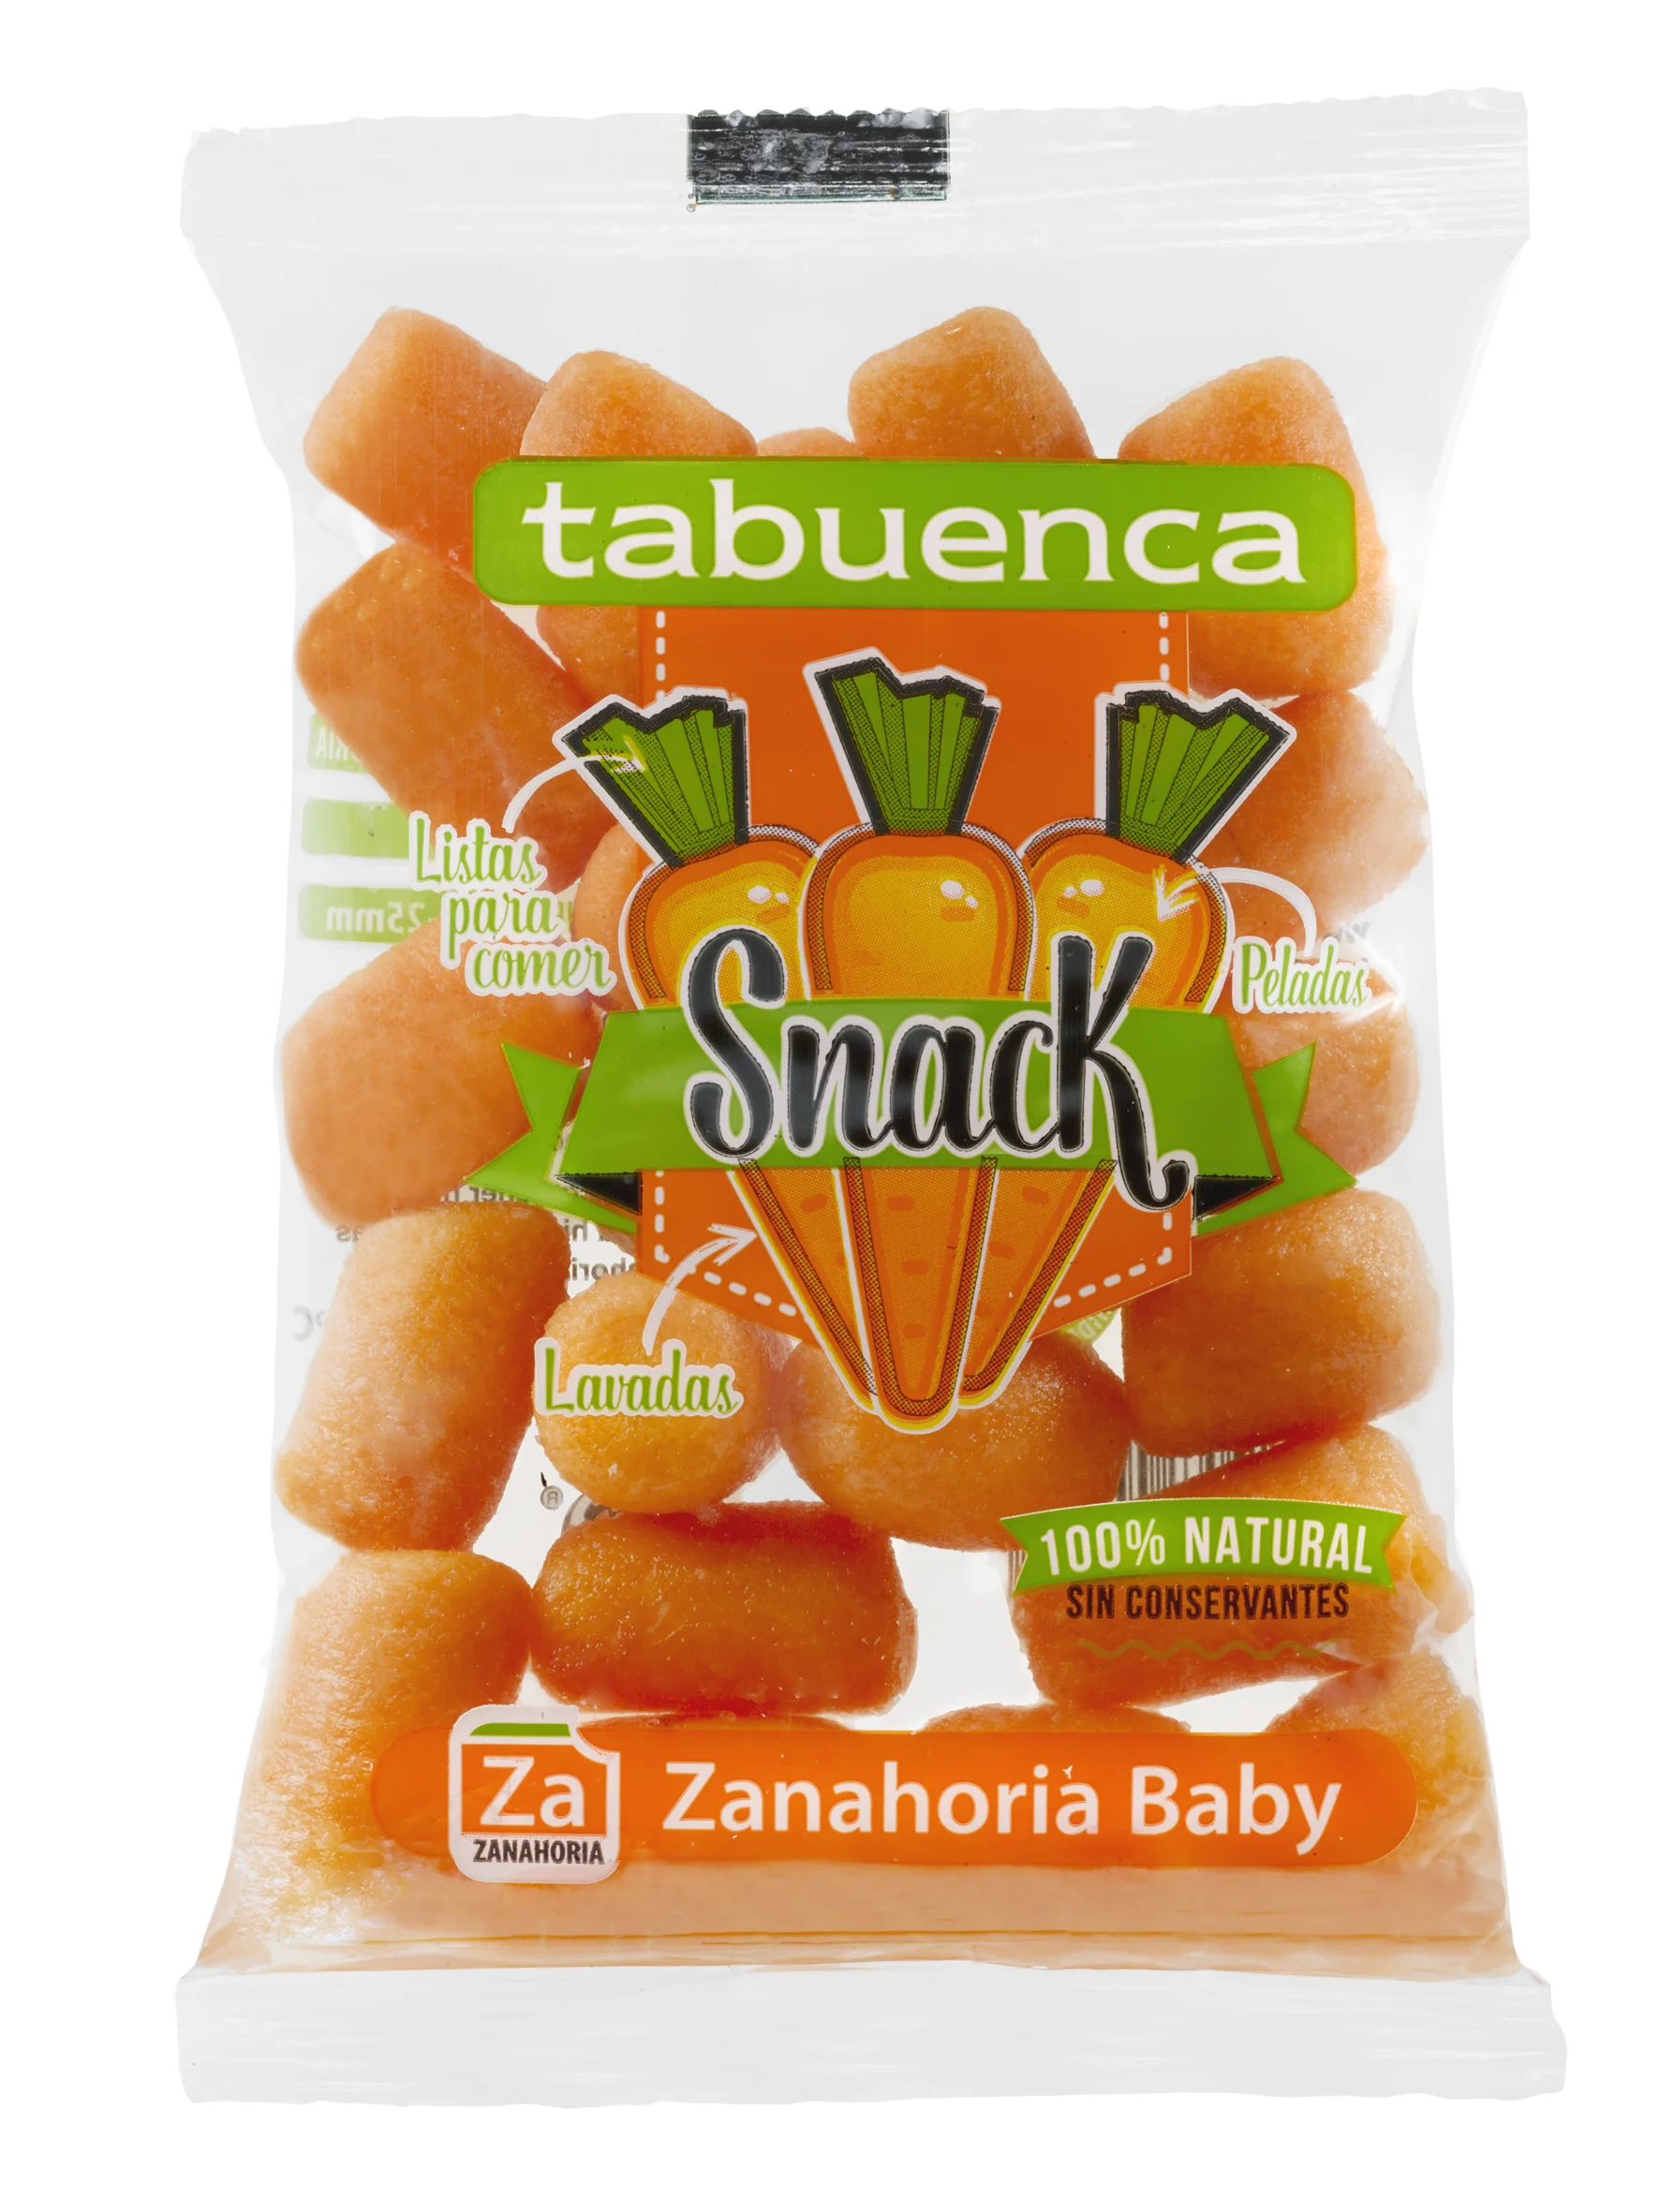 Tabuenca Snack Zanahoria baby.webp